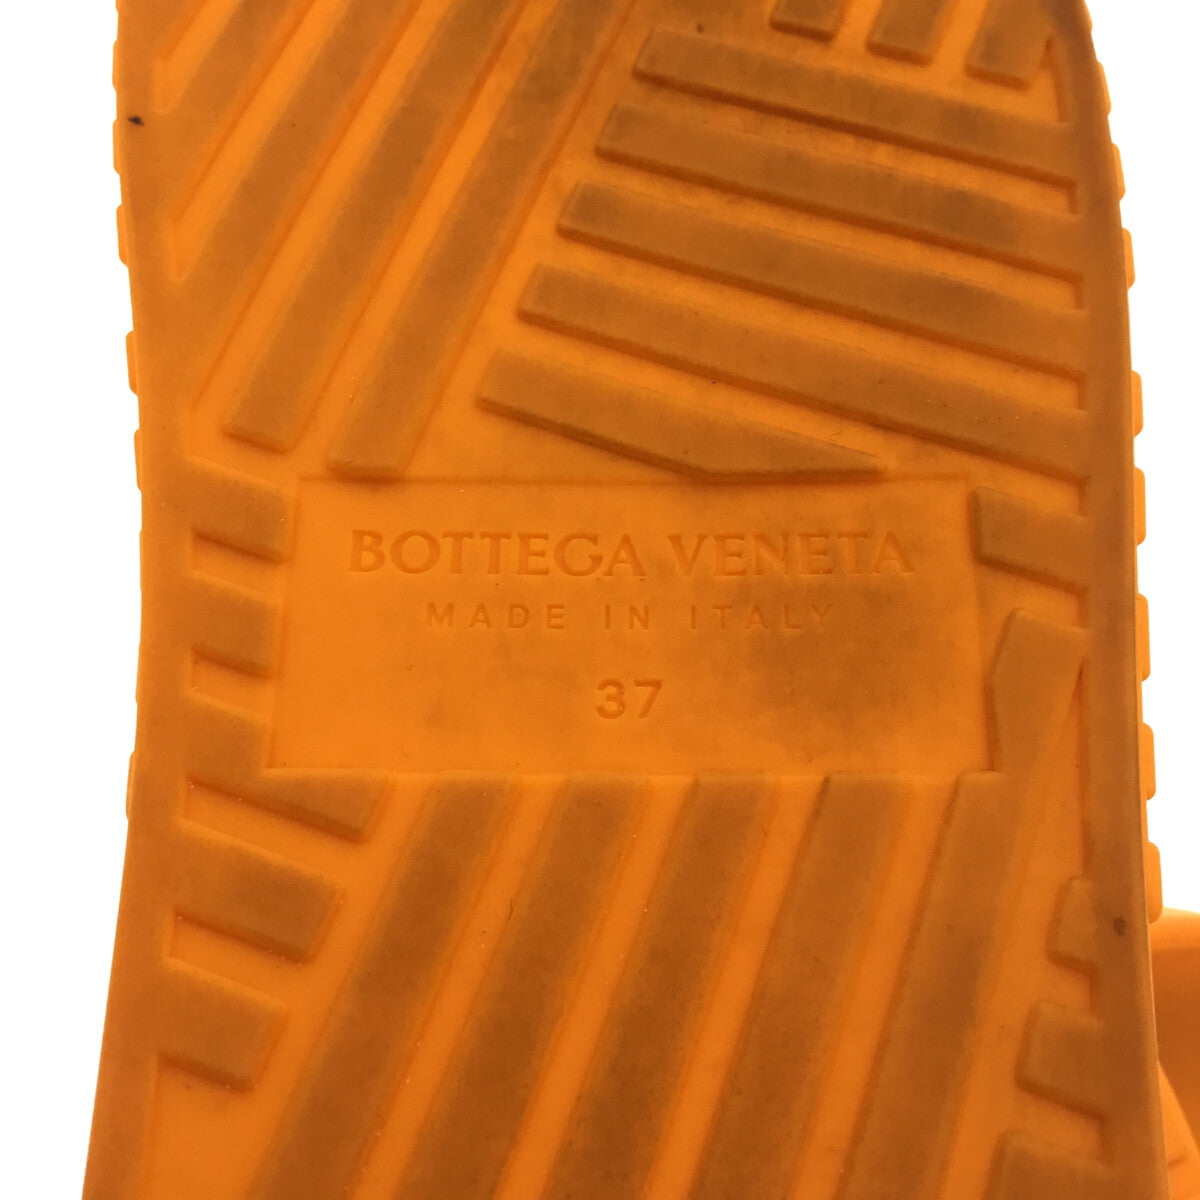 靴/シューズBOTTEGA VENETA / ボッテガヴェネタ | SLIDER サンダル | 37 | オレンジ | レディース